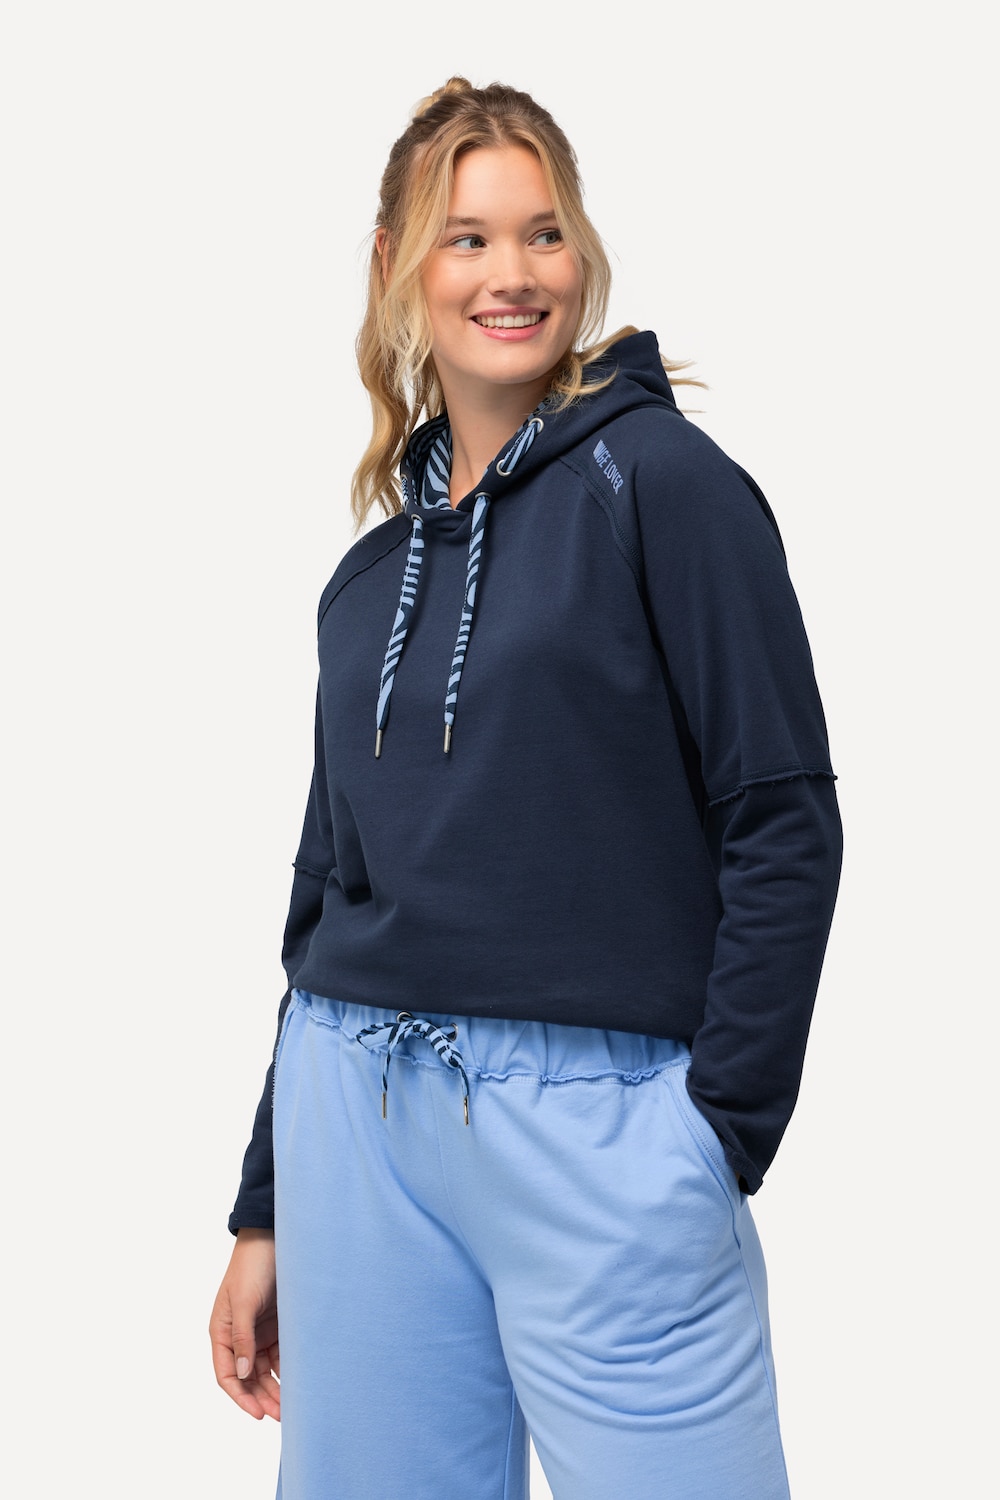 Grote Maten Loungewear-hoodie, Dames, blauw, Maat: 62/64, Katoen/Polyester, Ulla Popken